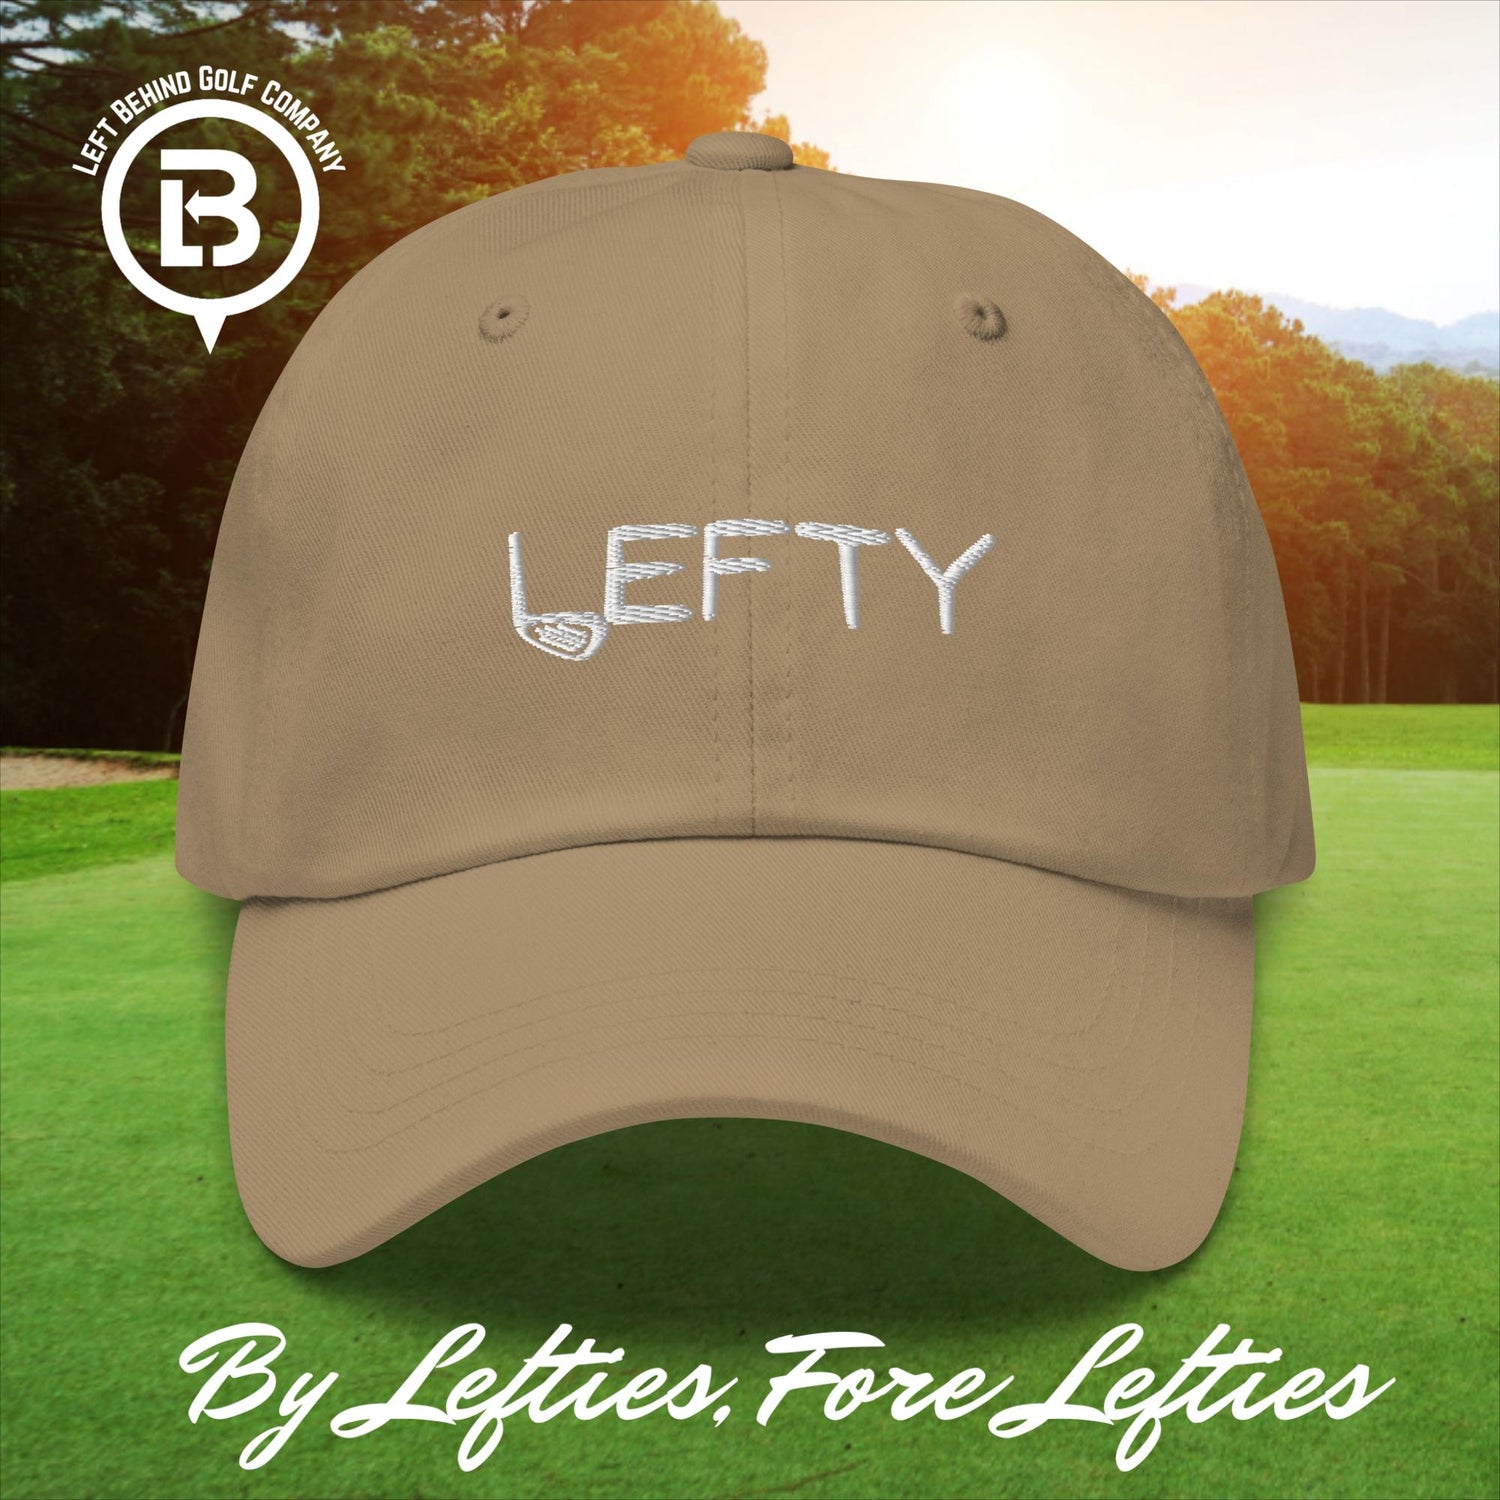 Club Lefty Dad Hat